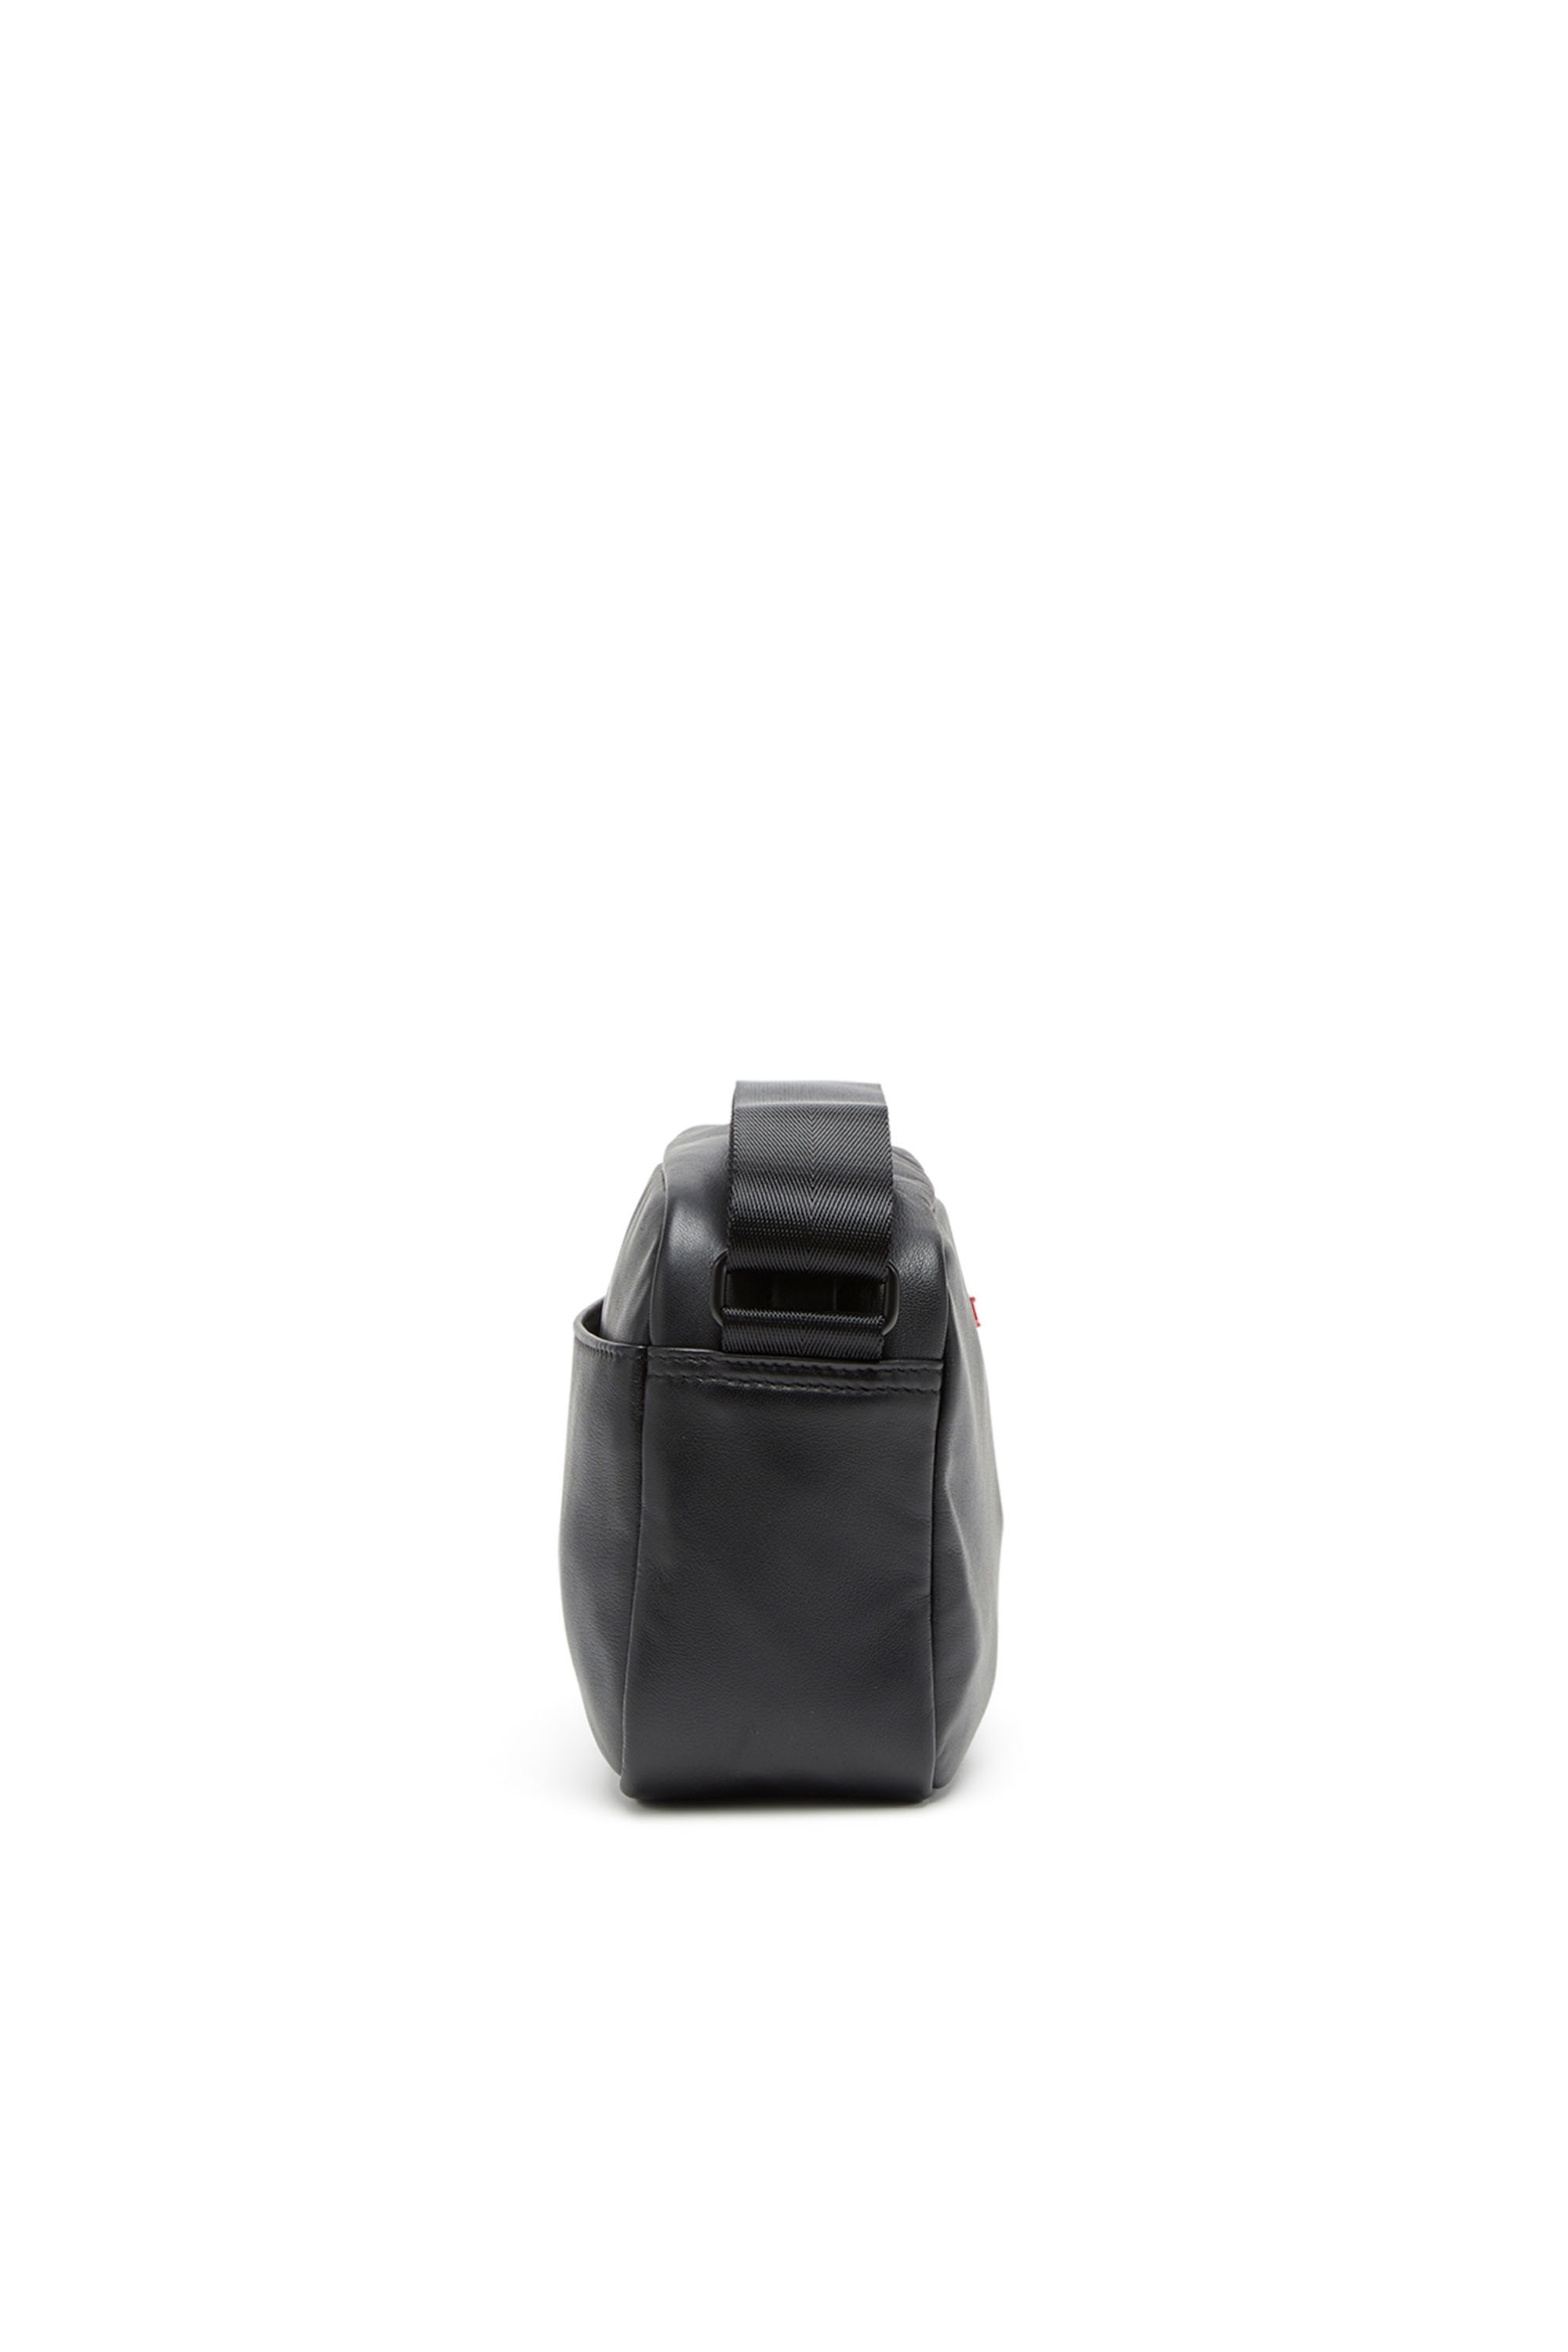 Diesel - RAVE CAMERA BAG X, Man Rave-Camera bag in nappa leather in Black - Image 3